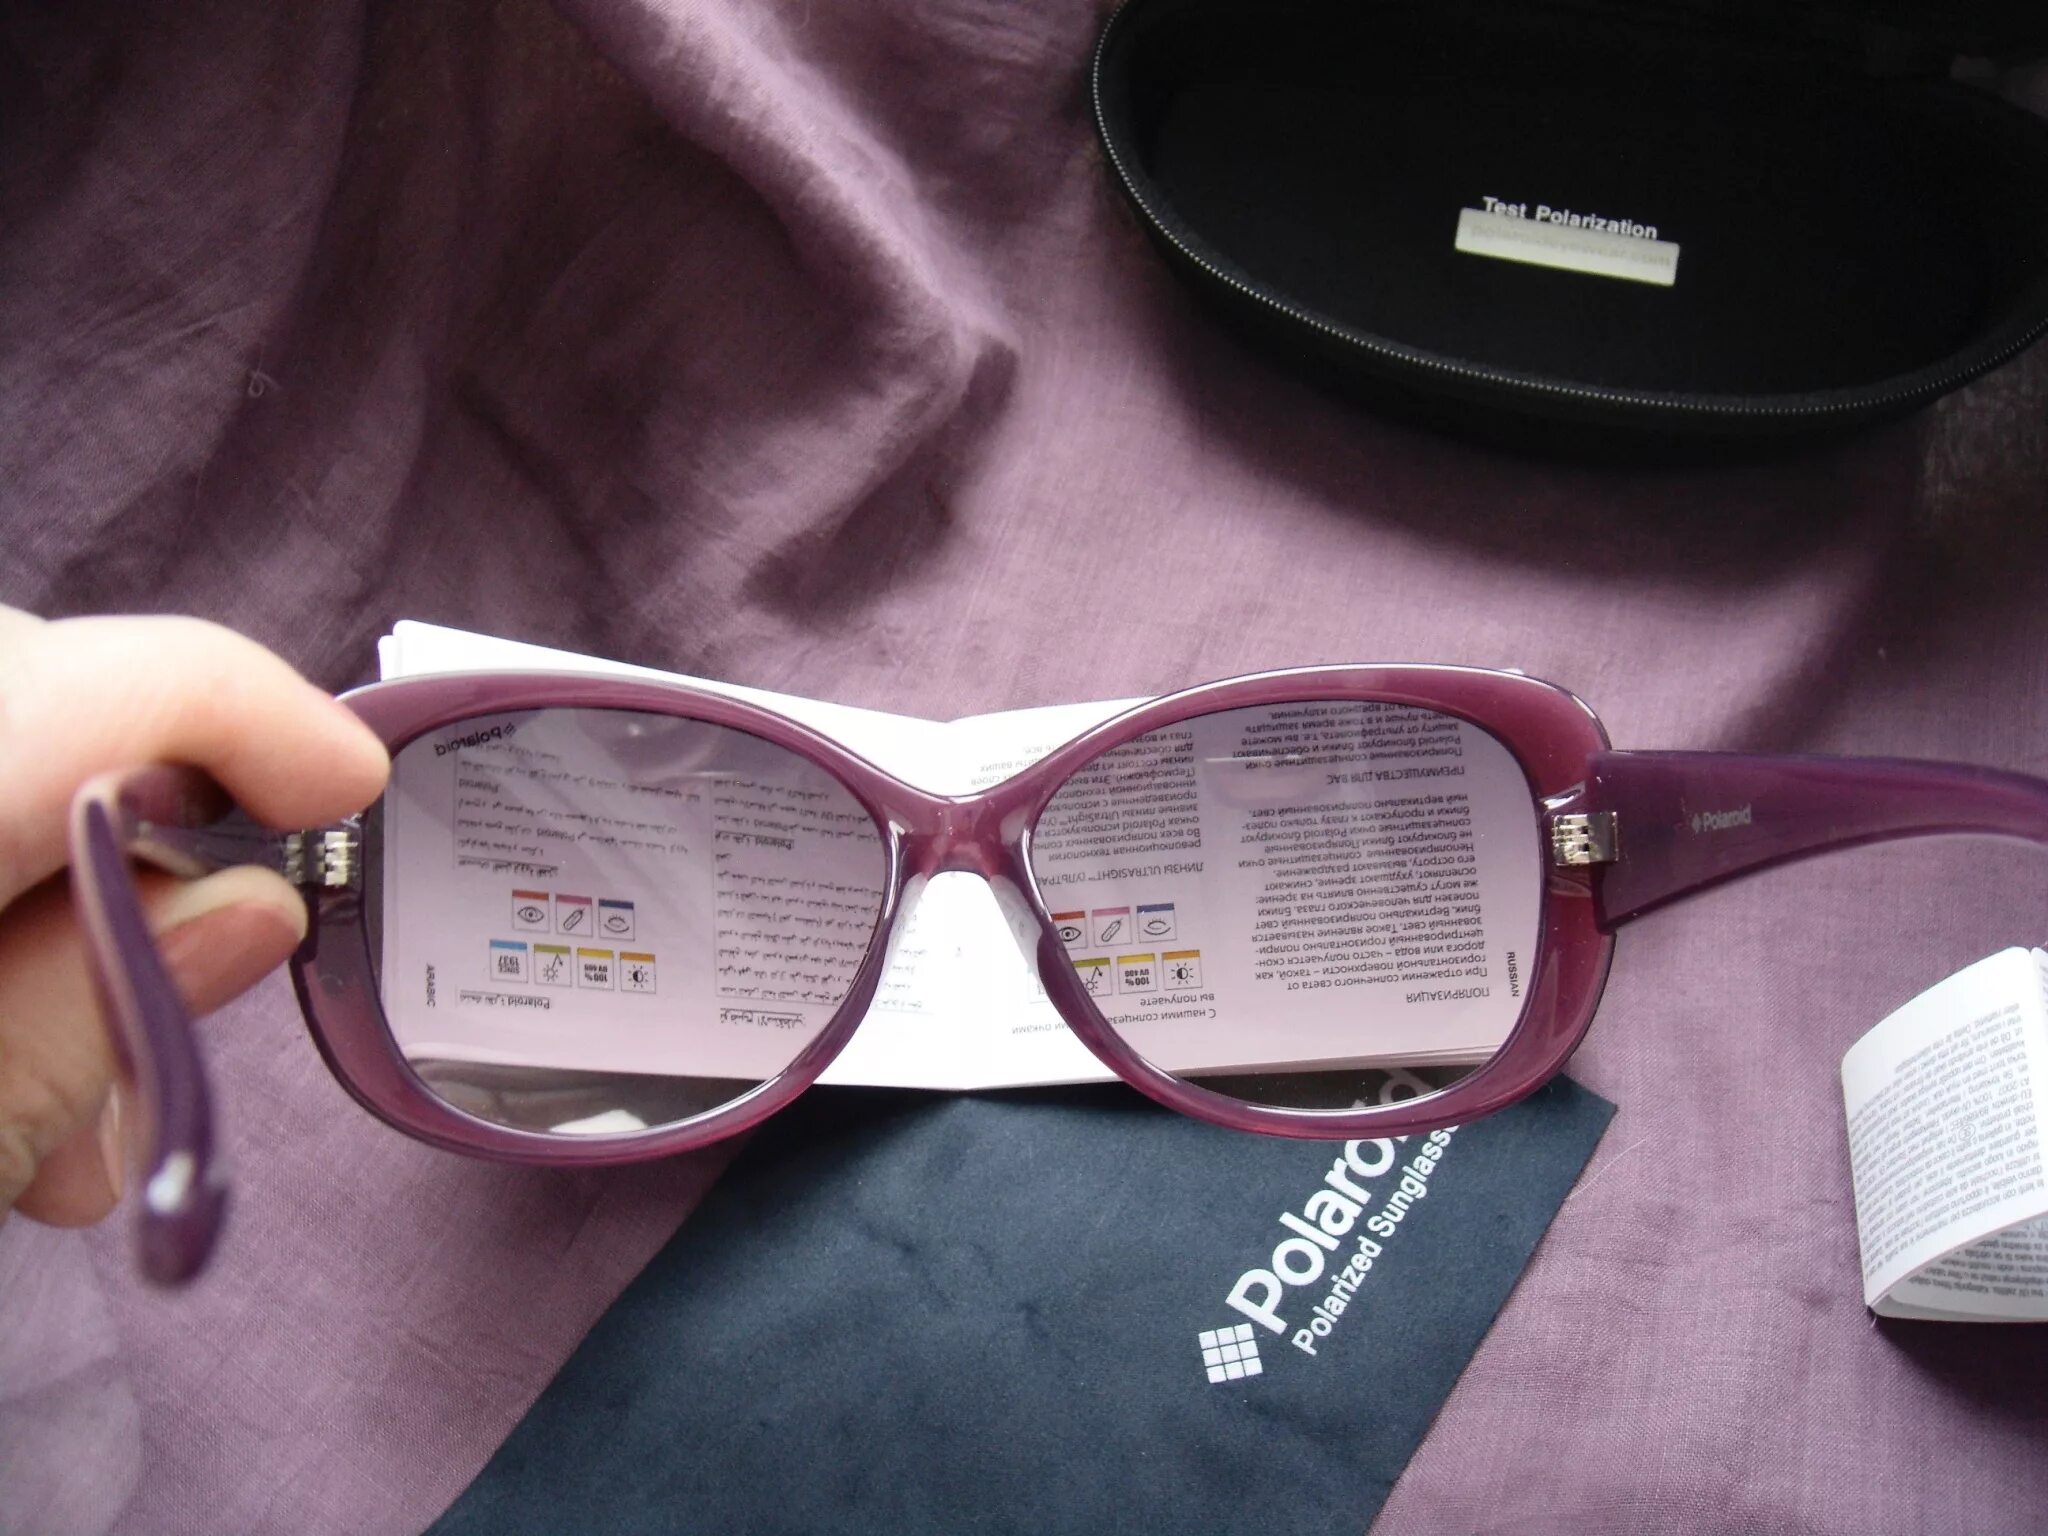 Очки солнцезащитные Polaroid p8317a. P8317a очки Polaroid. Polaroid 2118 очки комплектация. Очки 2138 полароид. Как отличить очки